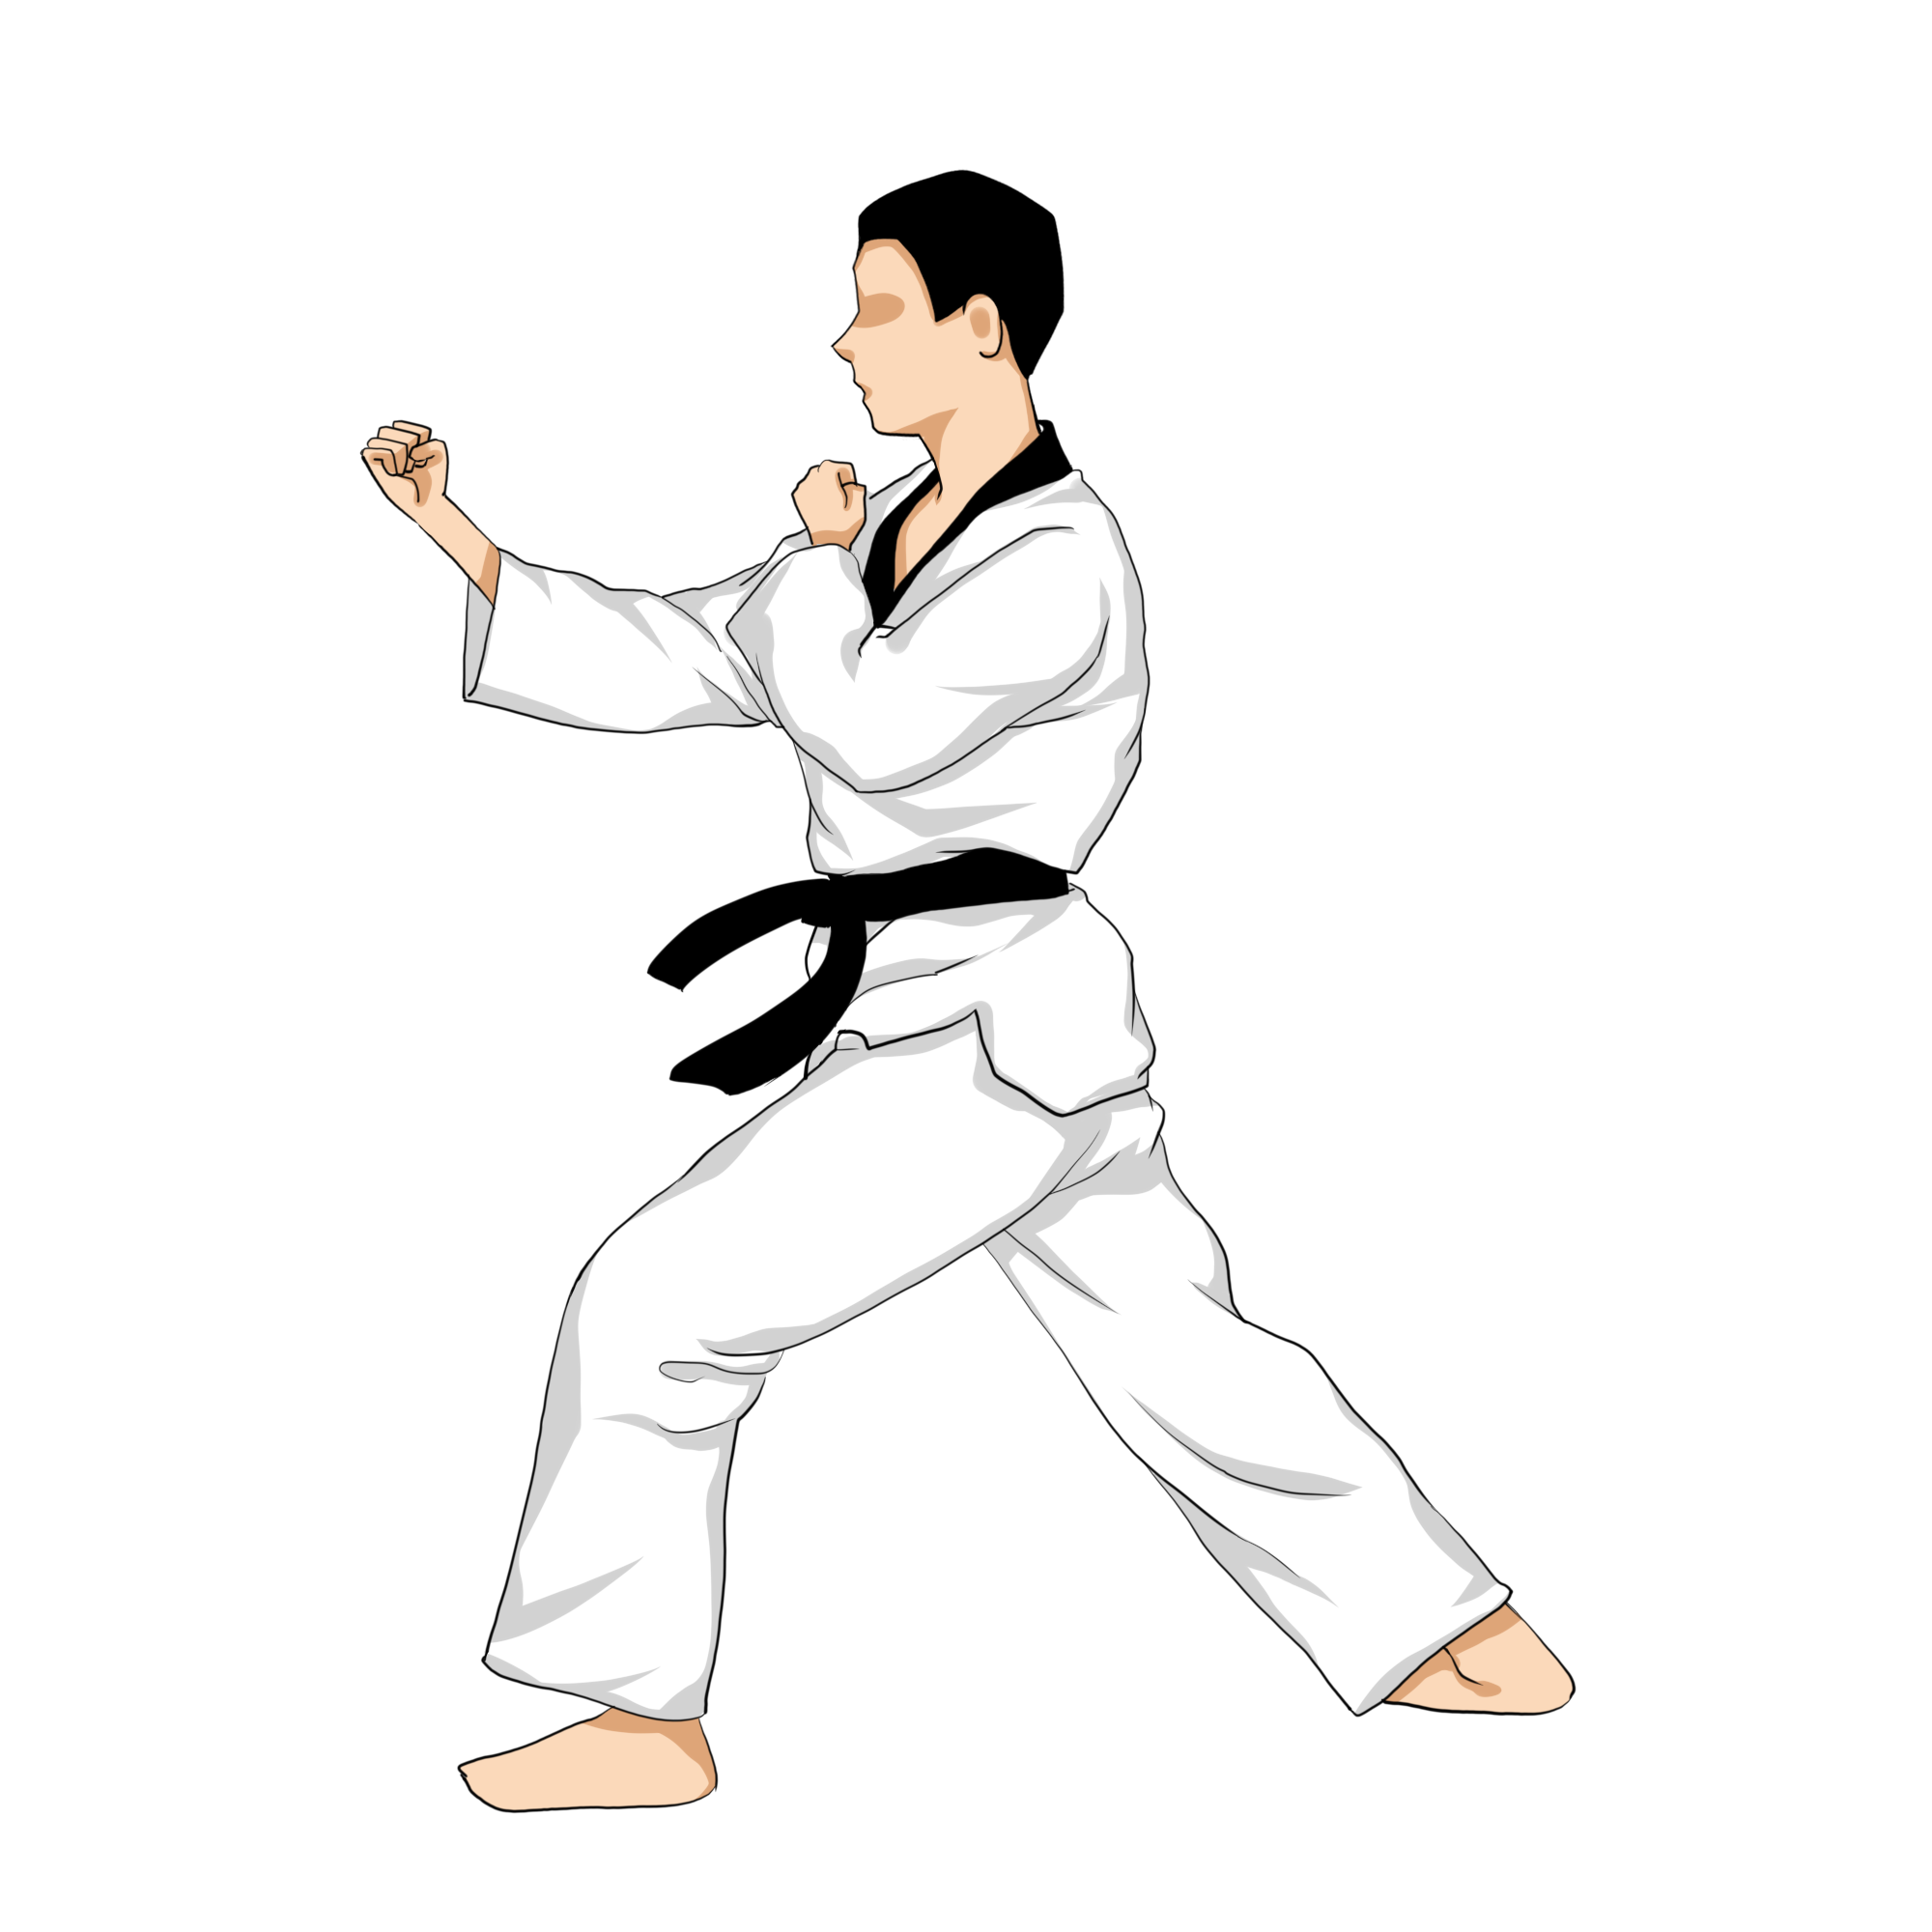 taekwondo-poomsae-8jang-punch